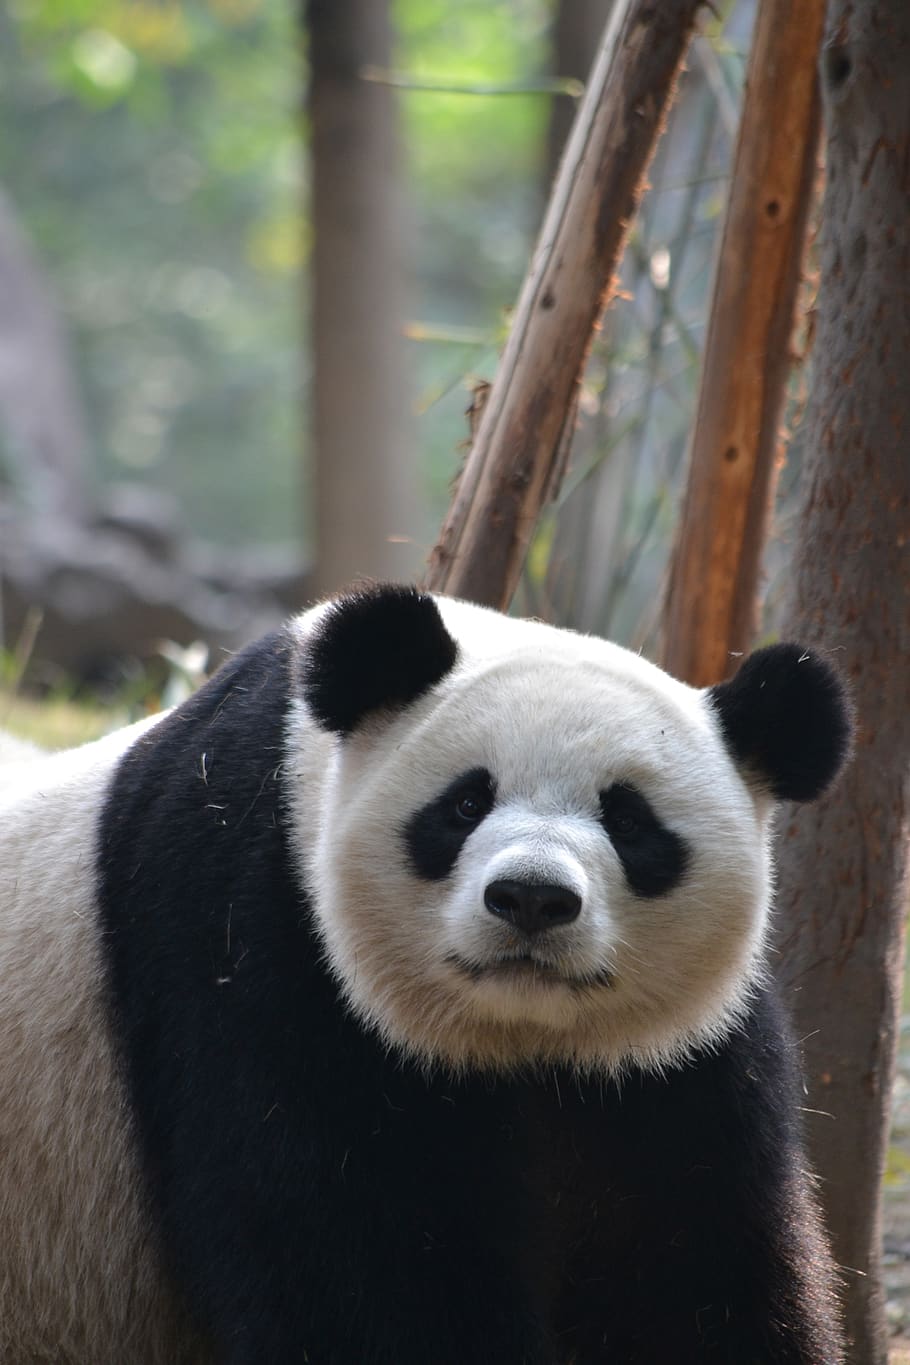 giant panda, chengdu, china, asia, wildlife, endangered, nature, mammal, one animal, animal themes